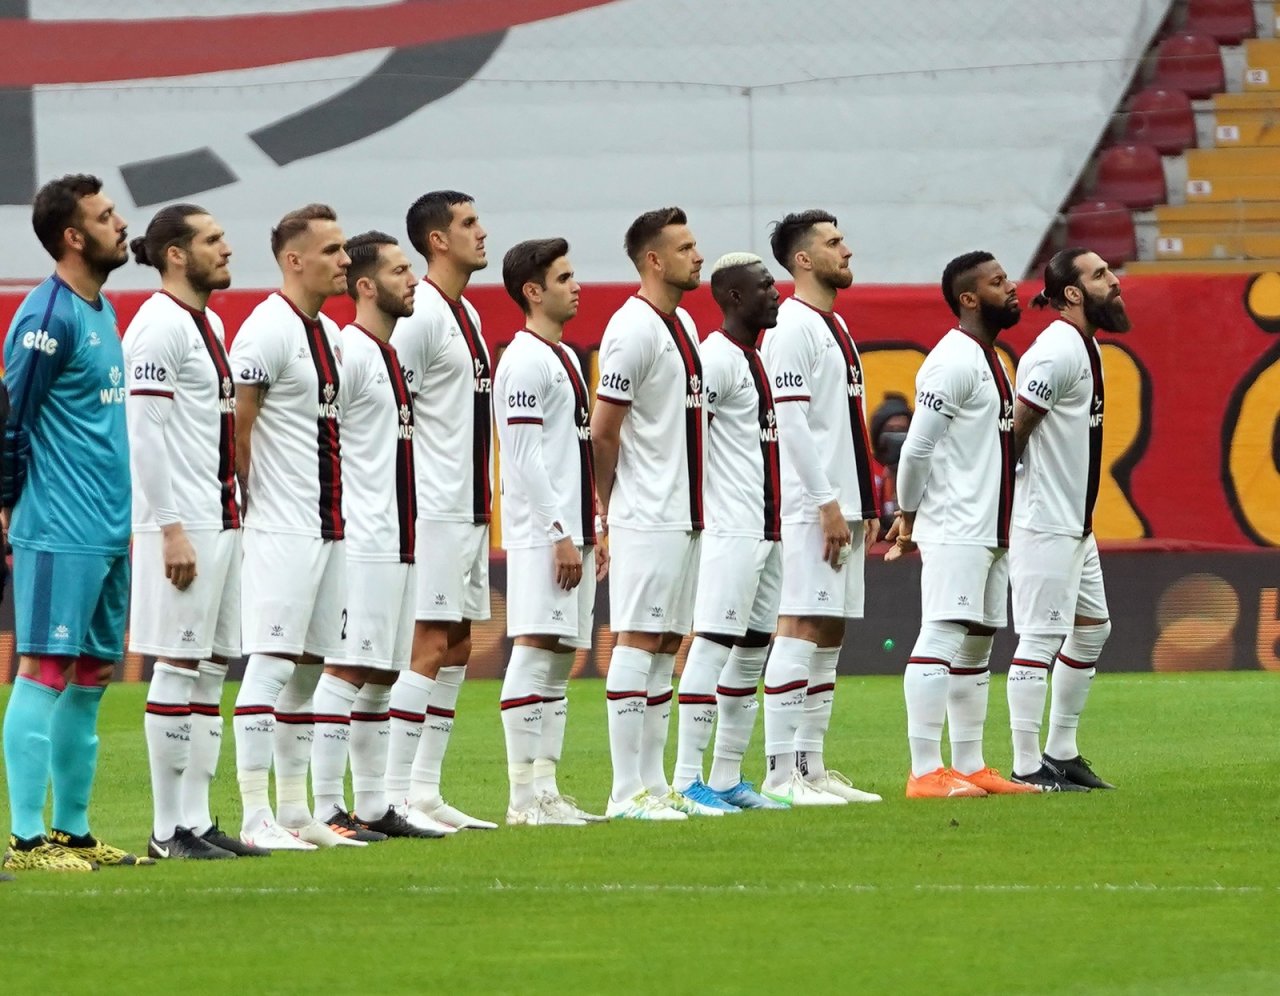 Süper Lig: Galatasaray: 0 - Fatih Karagümrük: 0 (maç Devam Ediyor)